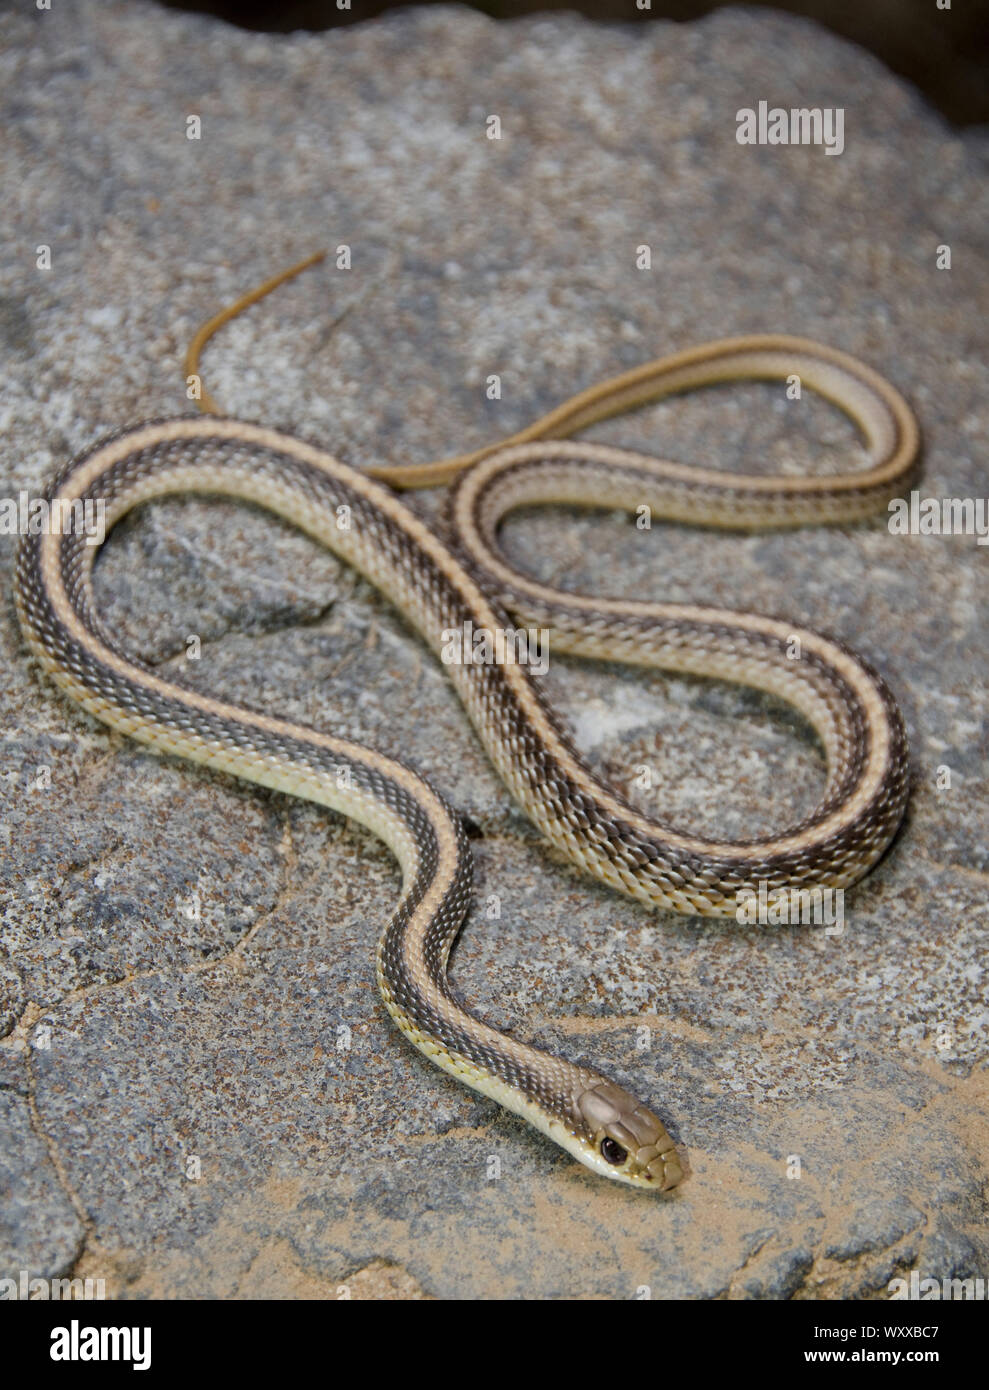 Western Patchnose Snake. Western Patchnose Snake (Salvadora hexalepis) from San Luis Obispo County, California. Stock Photo